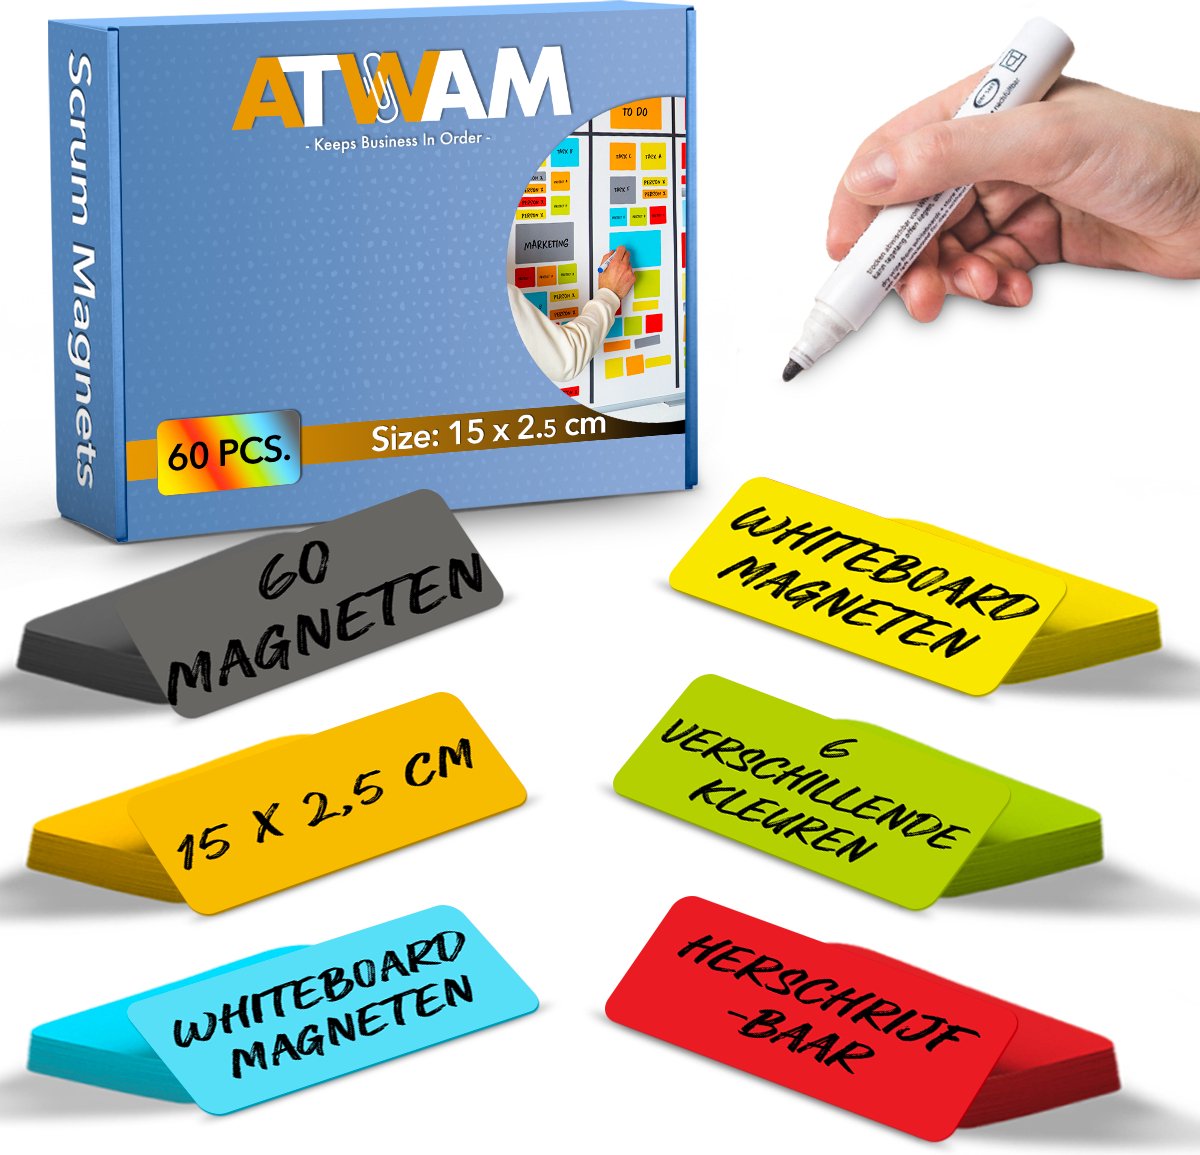 ATWAM Scrum Magneten - 60 stuks - Voor Whiteboard, Magneetbord, Memobord of Magnetisch Tekenbord – Herschrijfbare Magneten op Koelkast - Post It Notes – Kanban - 15 cm Breed x 2,5 cm Lang - 6 Kleuren - ATWAM